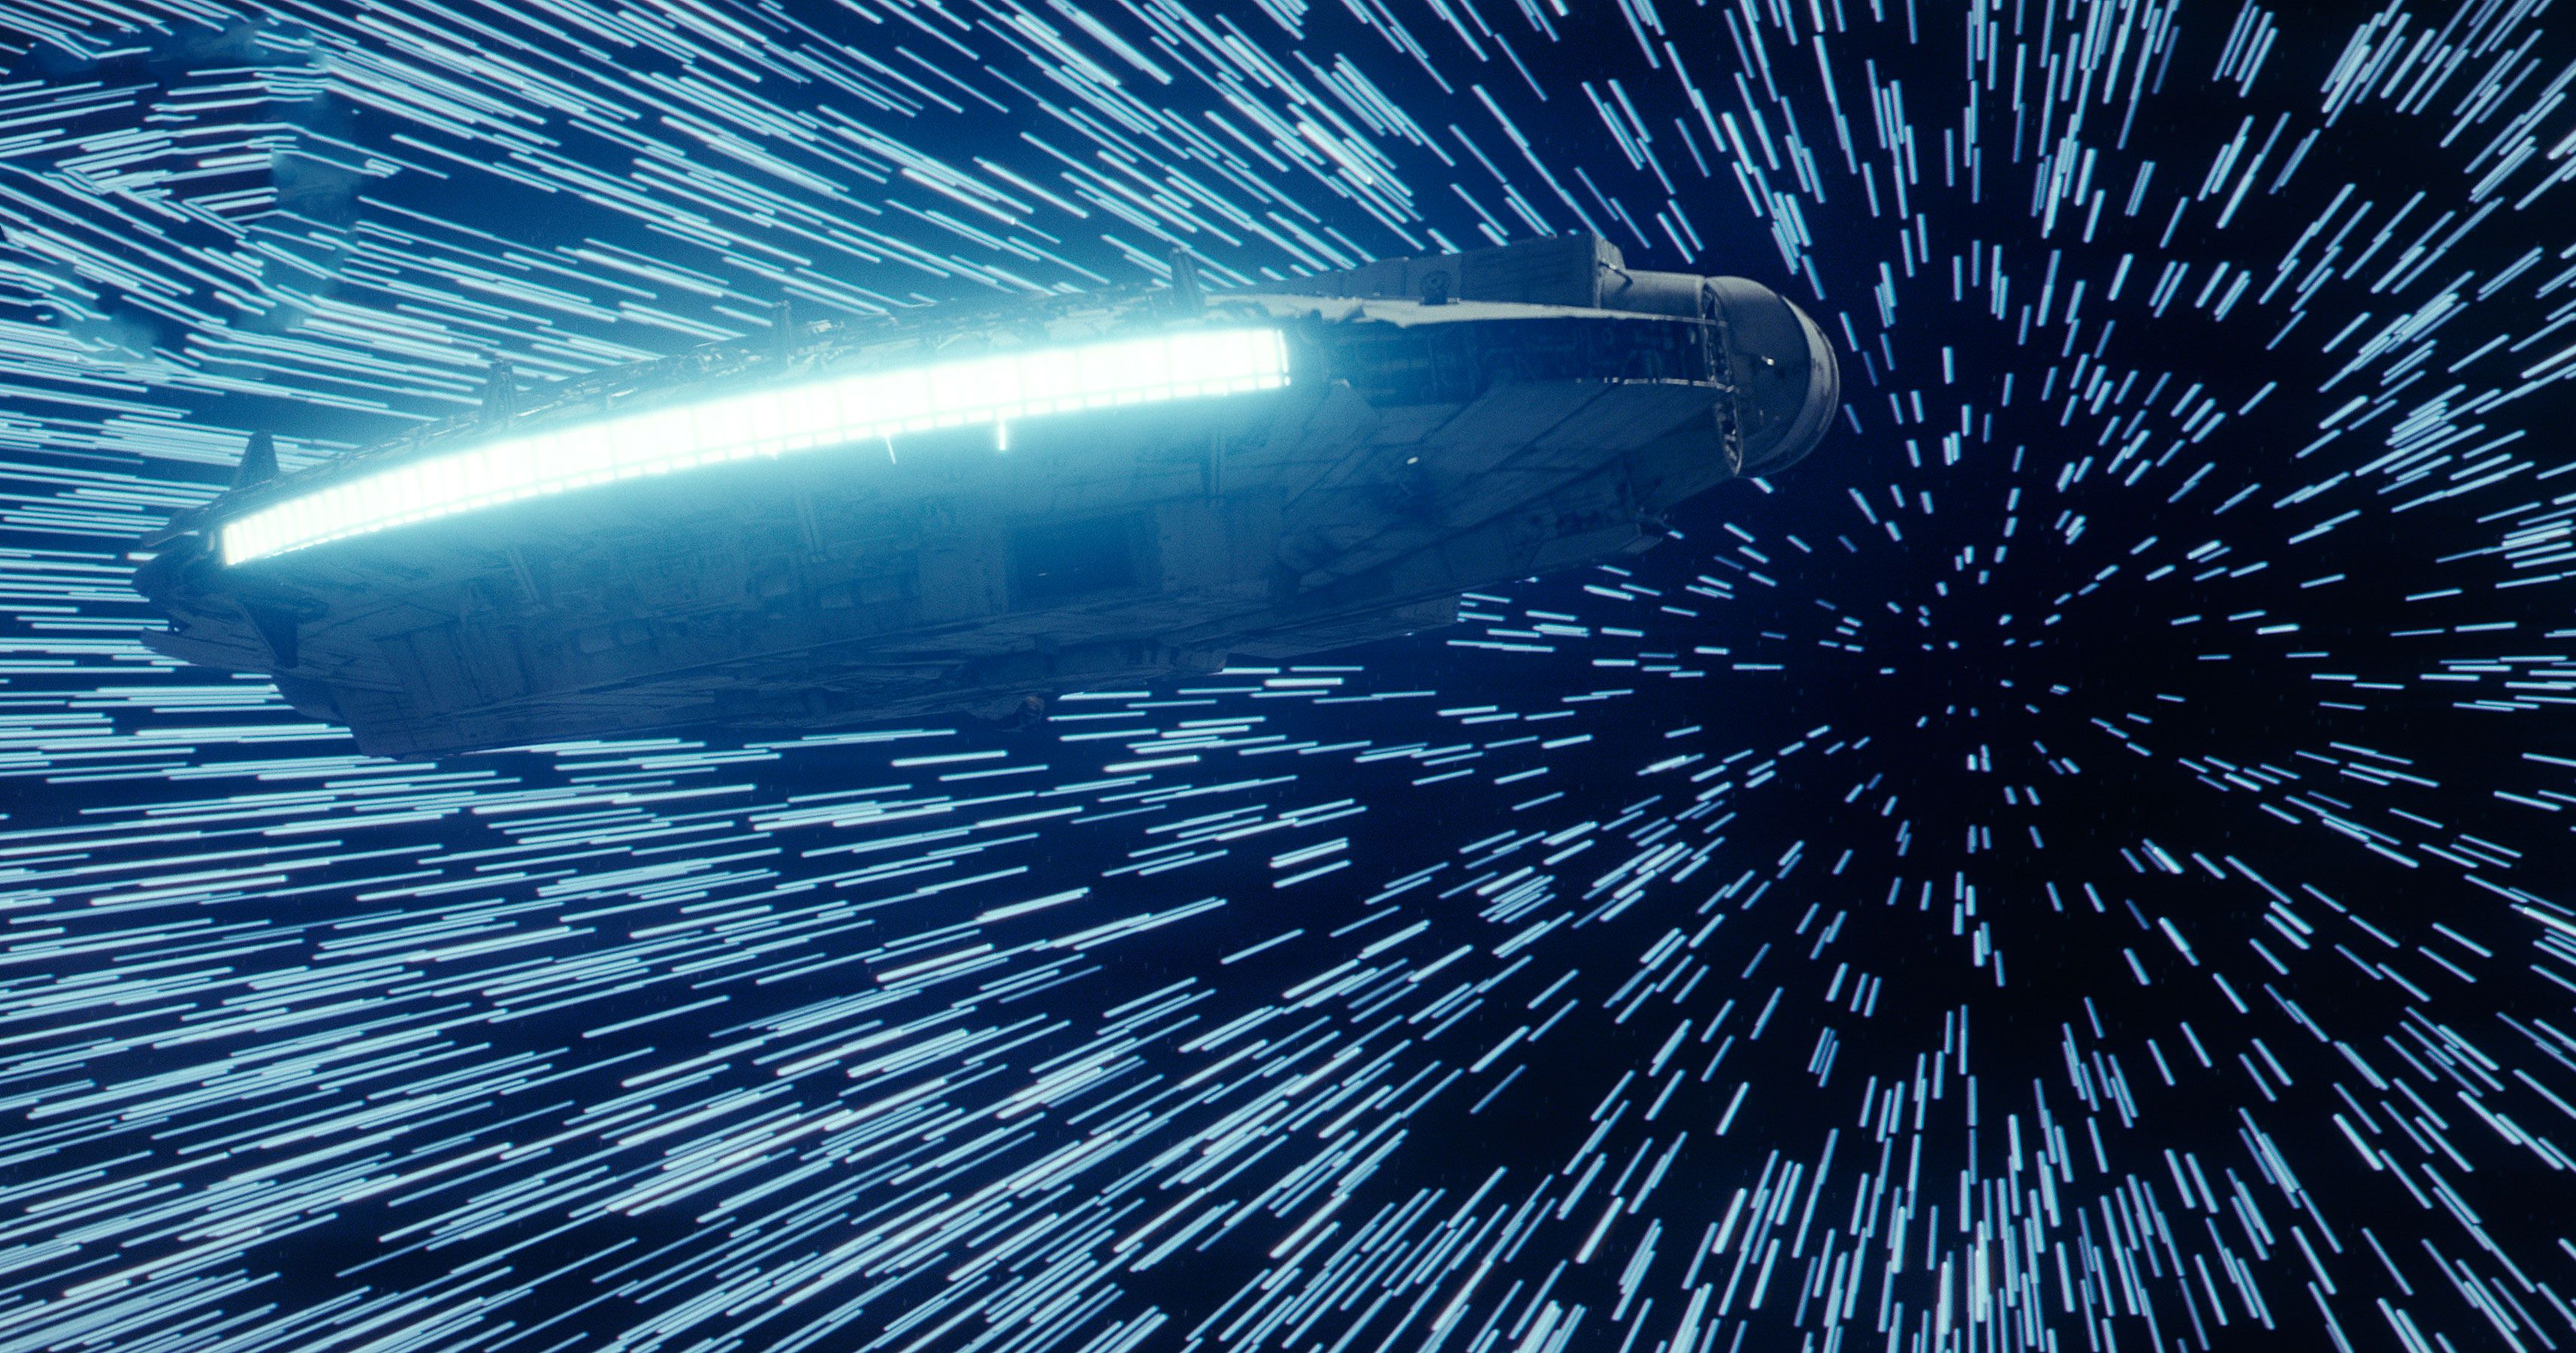 Star Wars The Last Jedi Millennium Falcon Hitting Lightspeed, HD